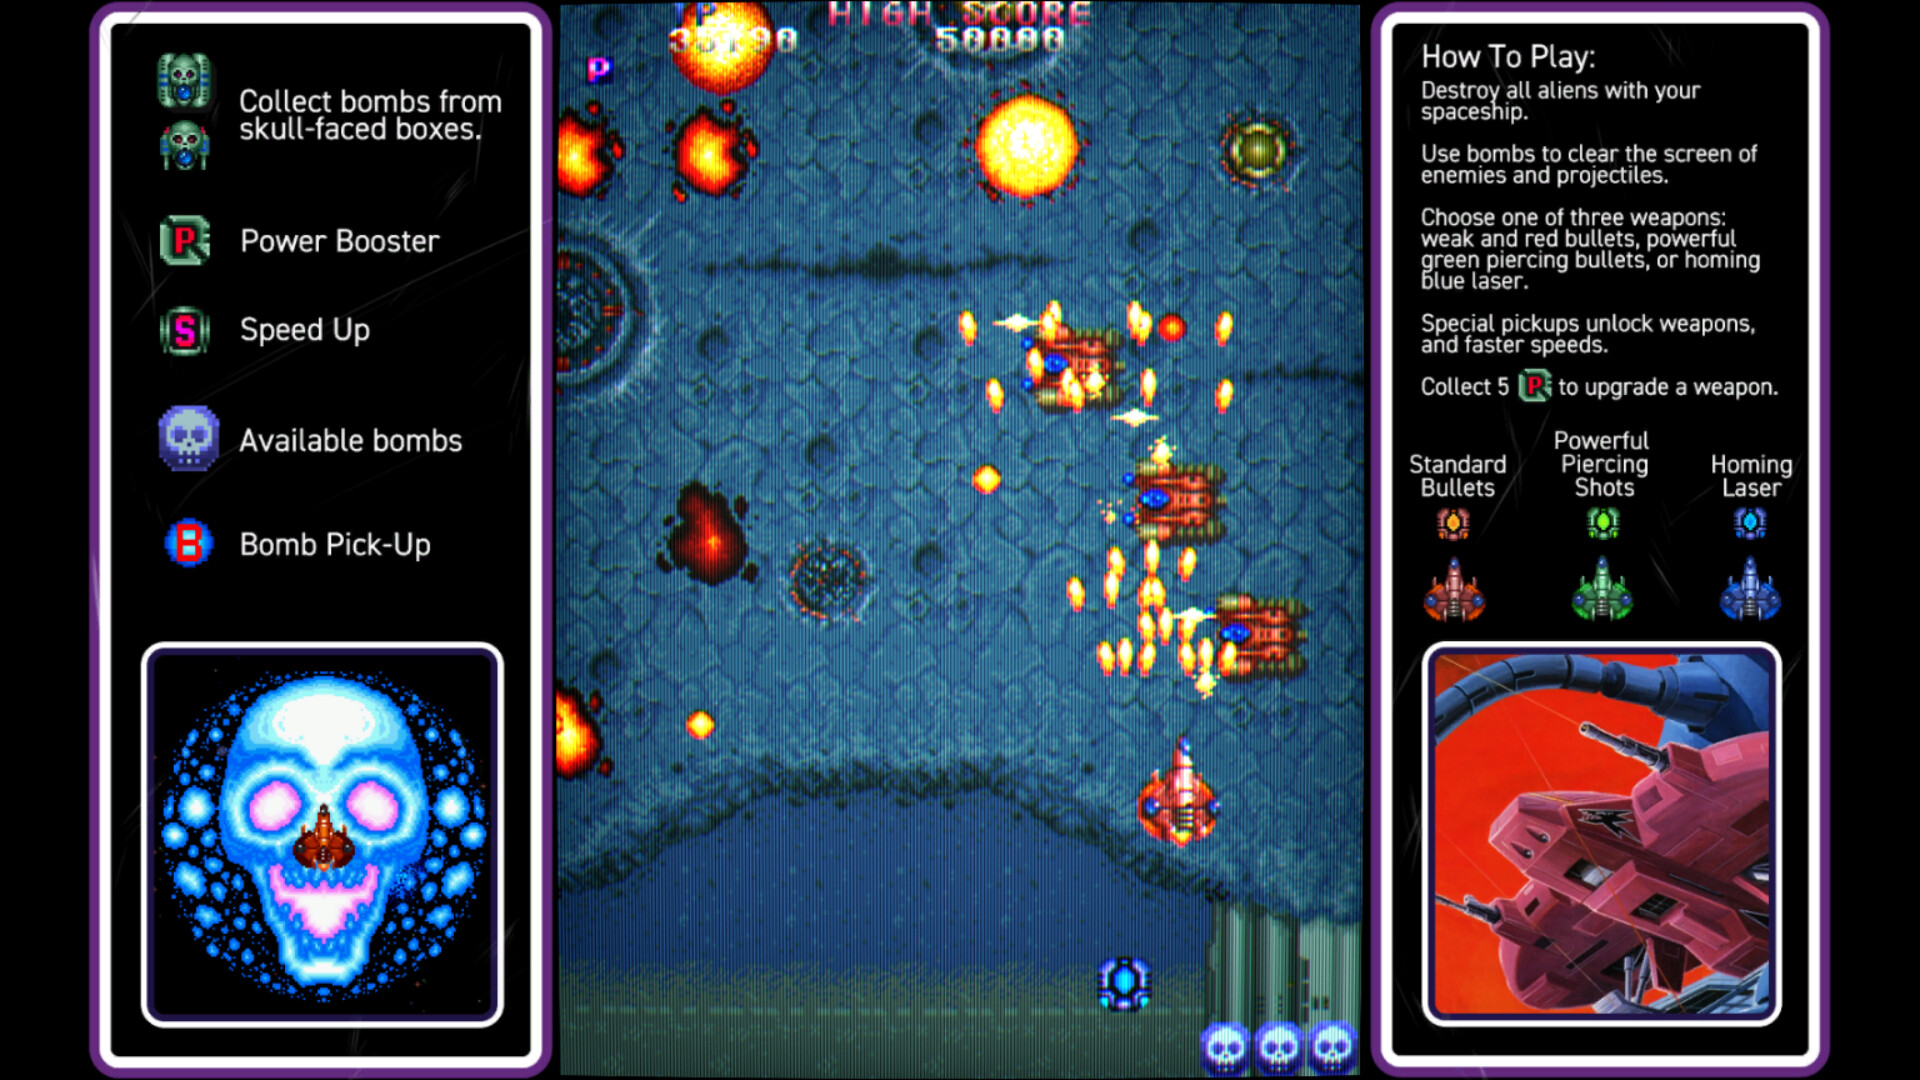 Tela de jogo de arcade retro com invasores de pixel e nave